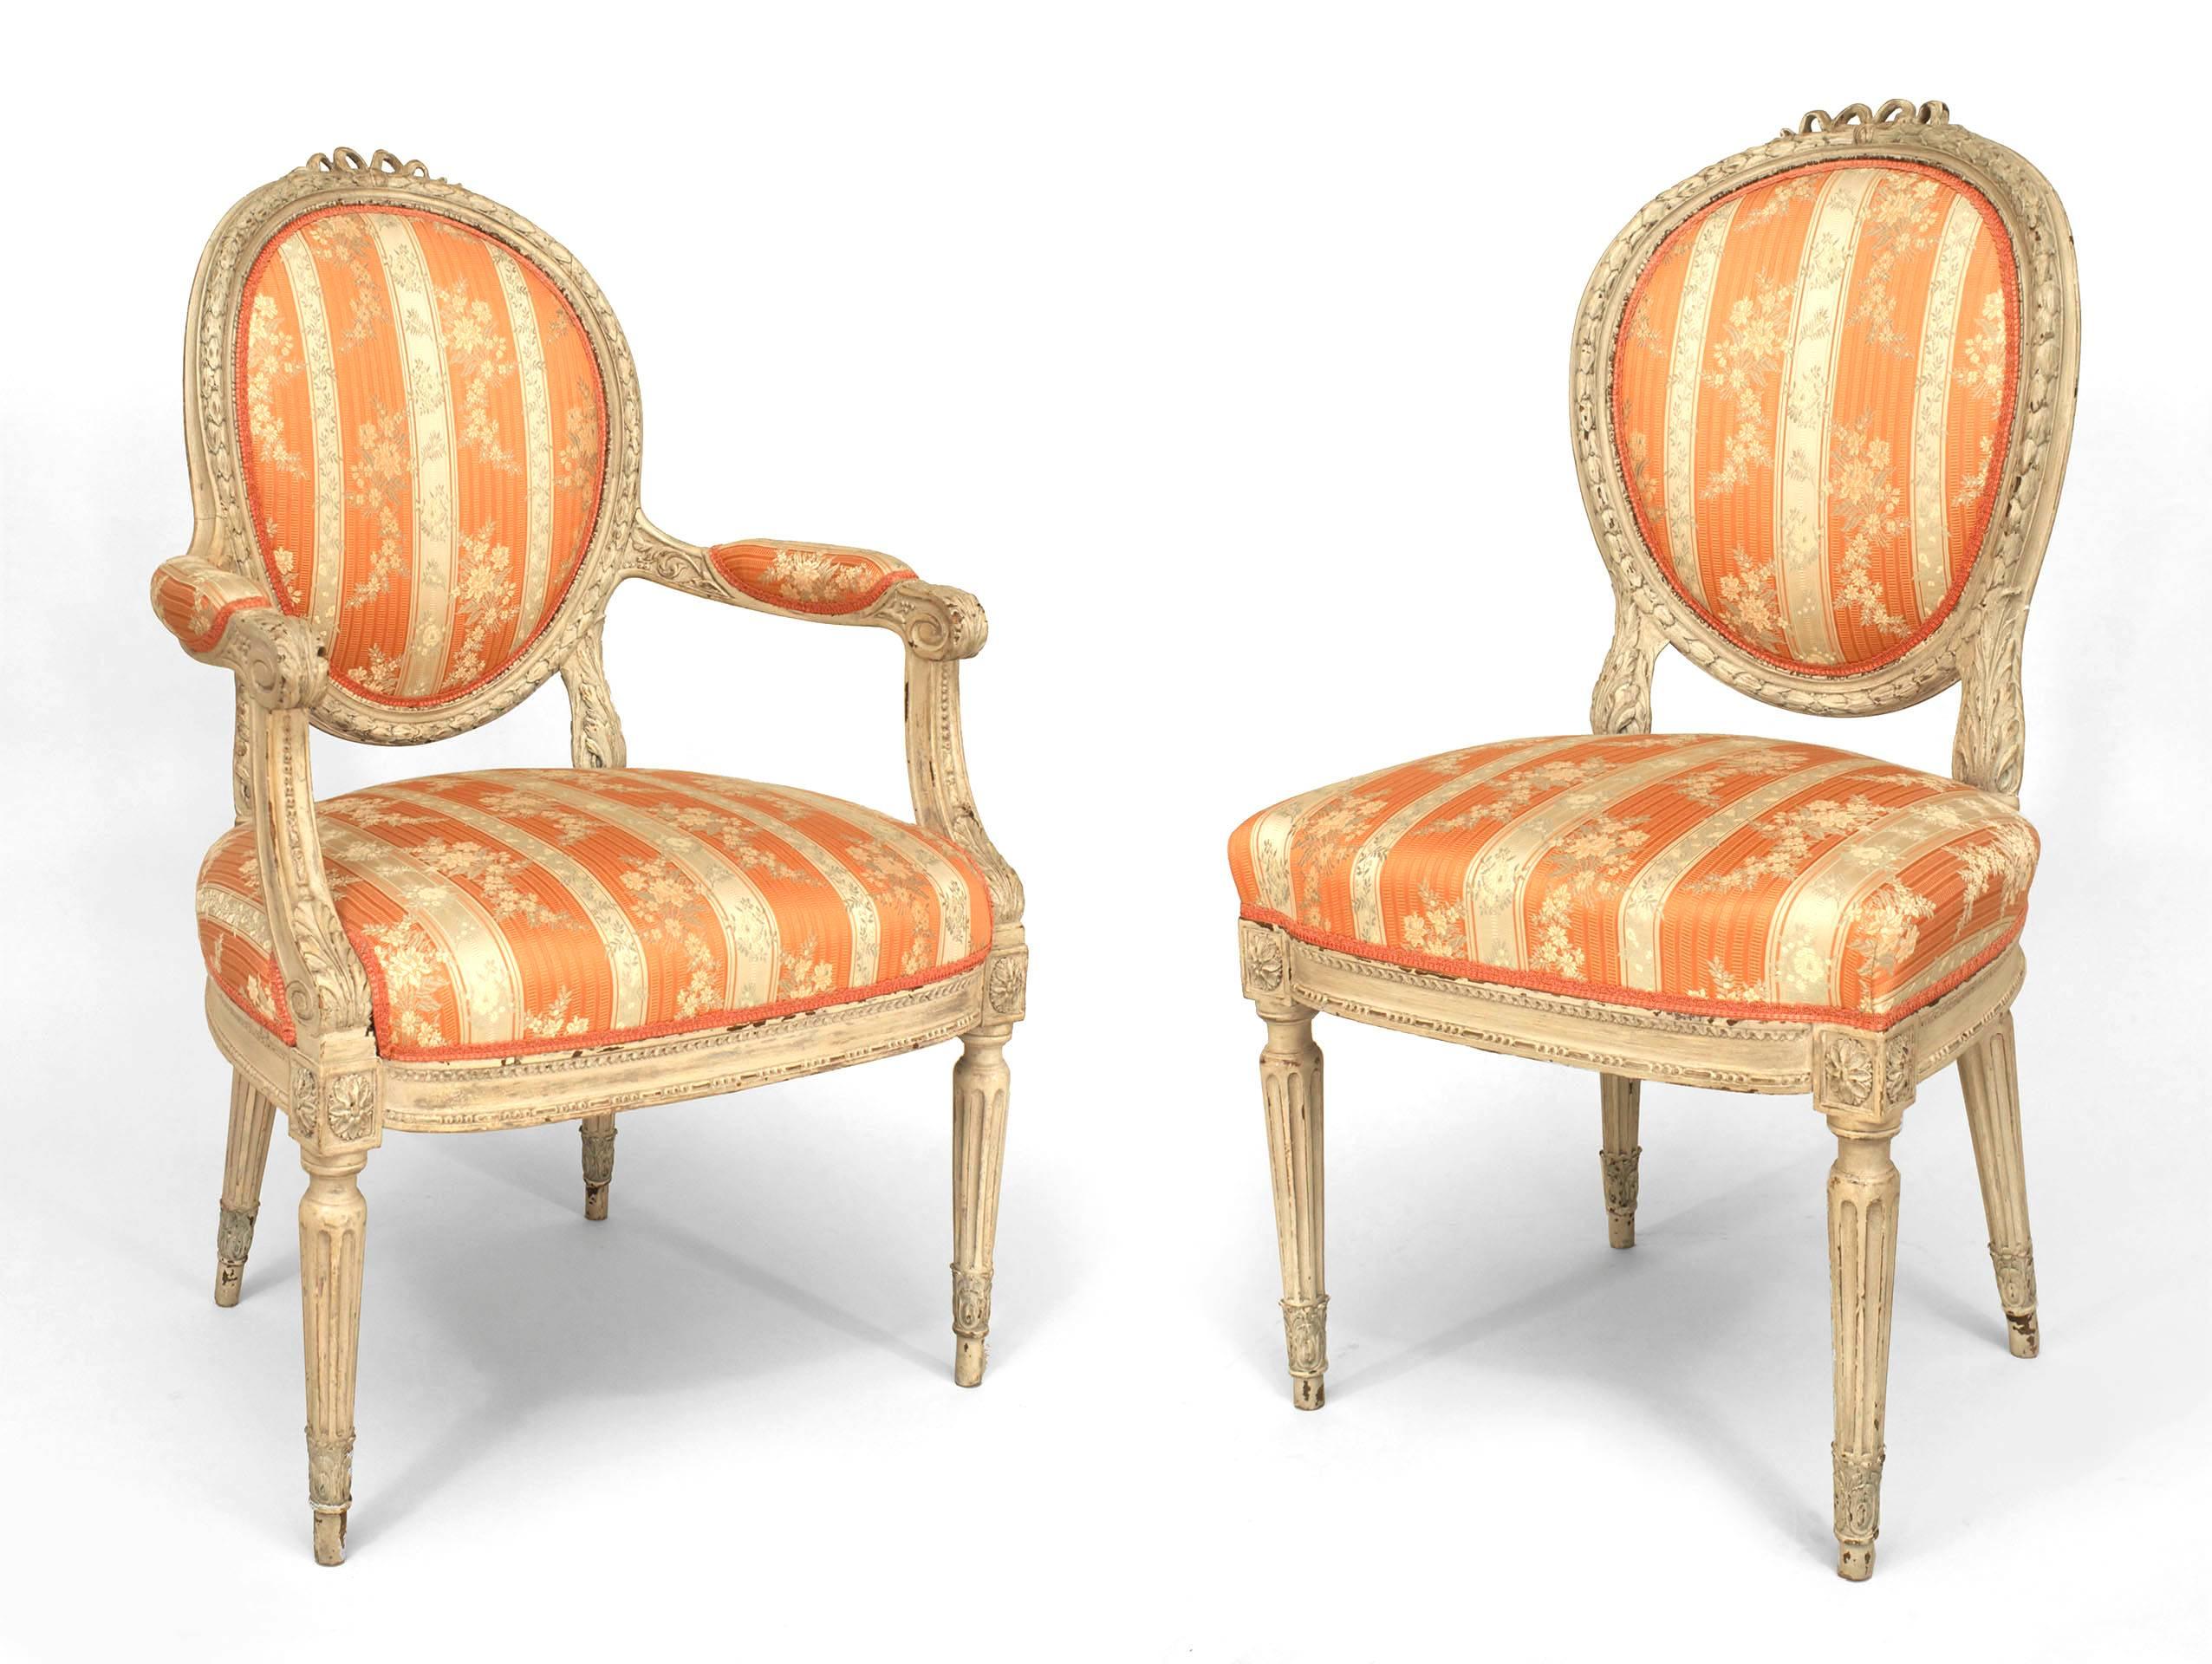 Satz von 8 französischen Louis XVI-Stil (19. Jh.) weiß lackierten Esszimmerstühlen mit geschnitzter Bogenknotenplatte und ovaler Rückenlehne, gepolstert in rosa und cremefarbenem Damast. (Seiten 20¬Ω